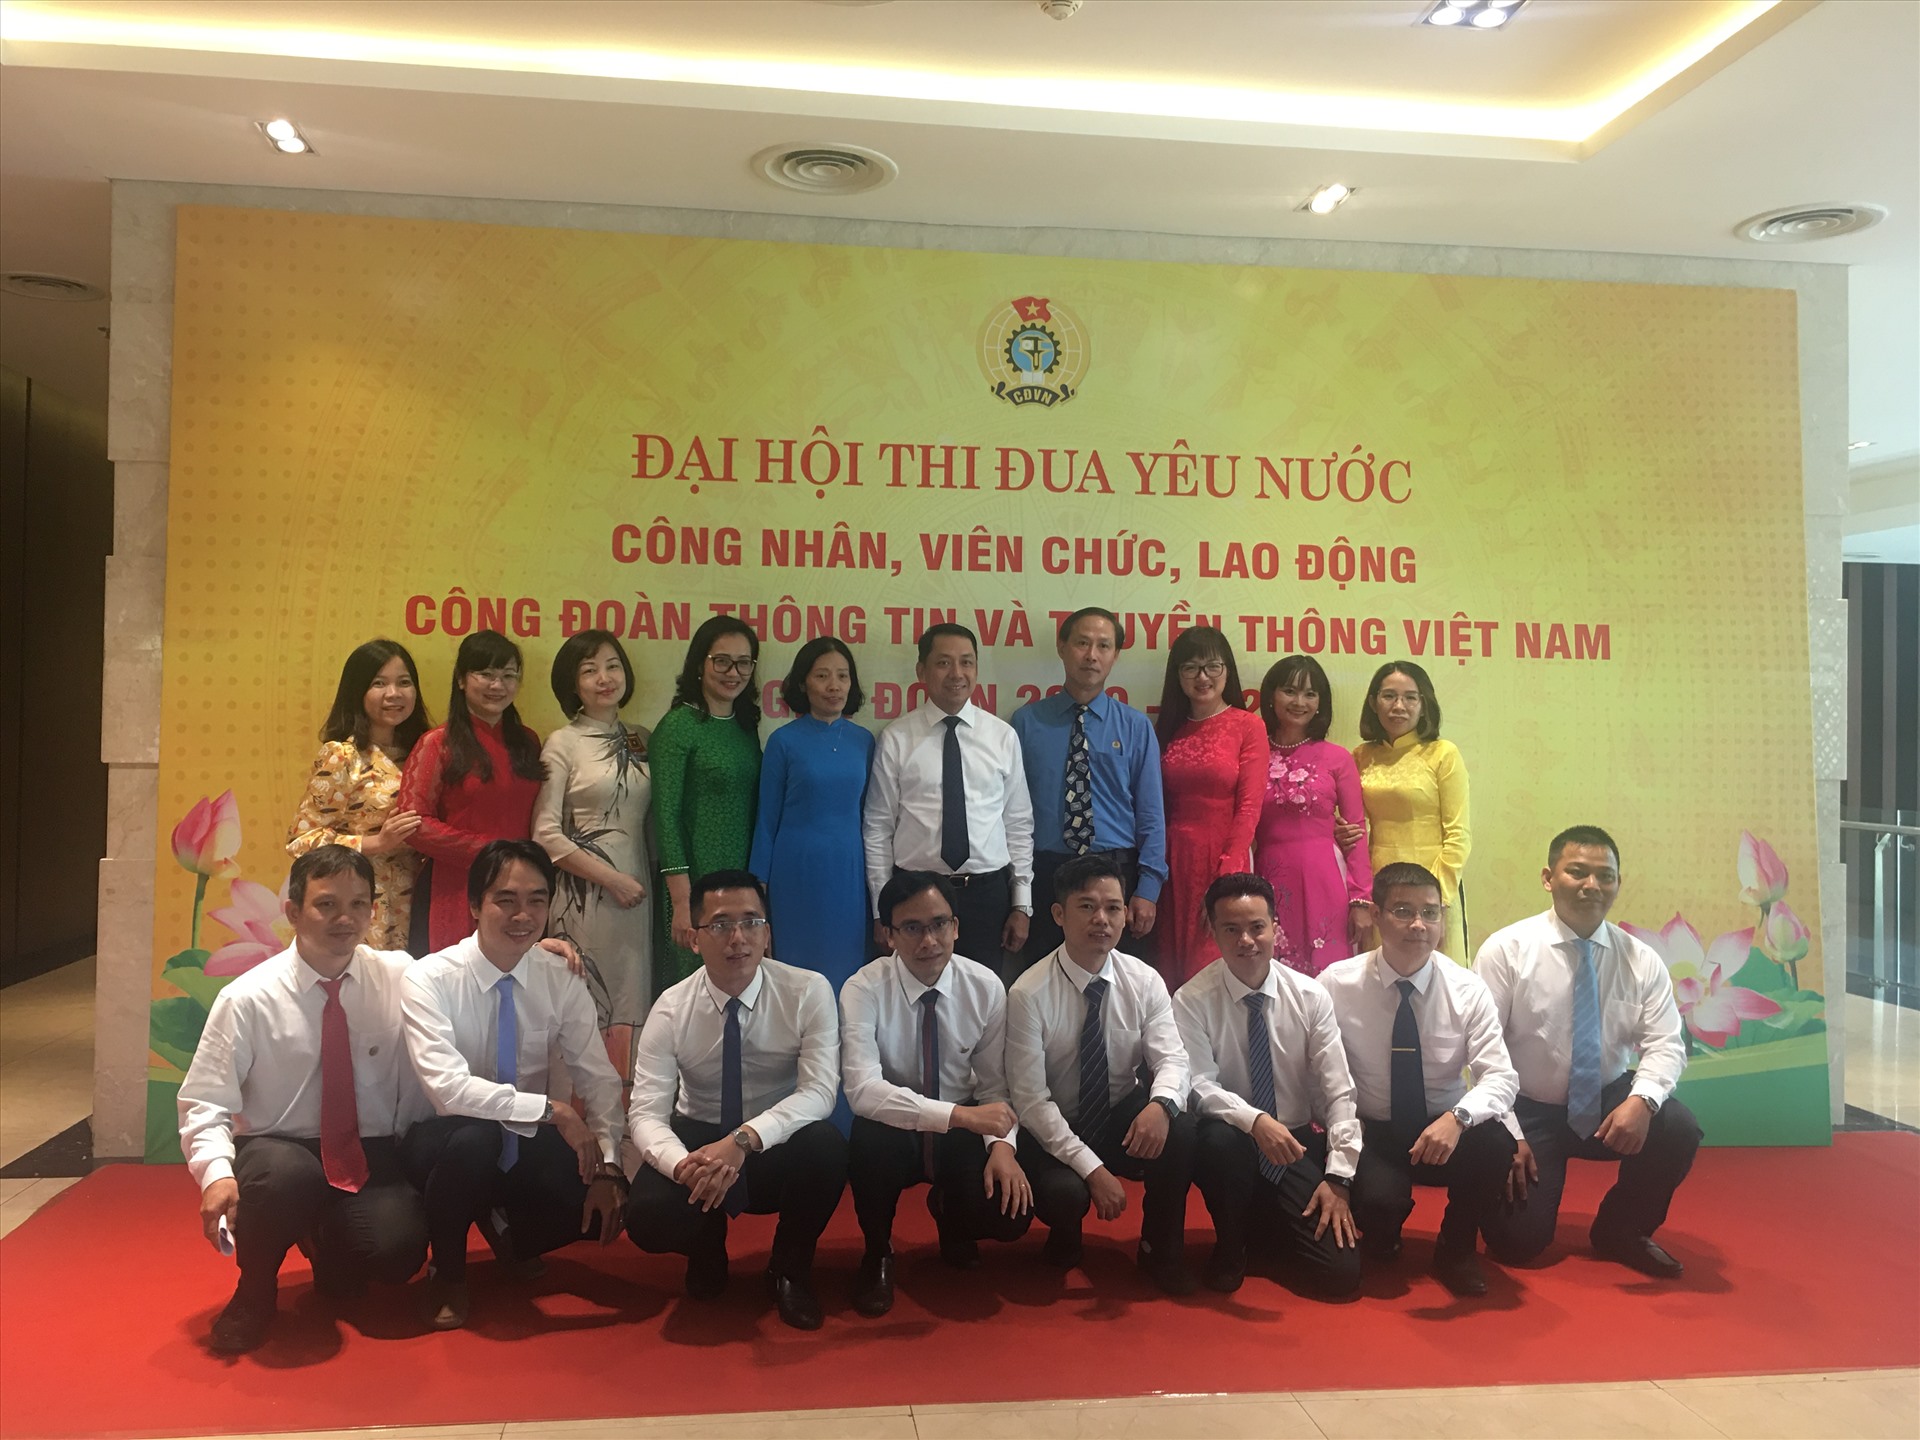 Chủ tịch Công đoàn Thông tin và truyền thông Việt Nam Chu Văn Bình cùng các đại biểu tại Đại hội. Ảnh: Kiều Vũ